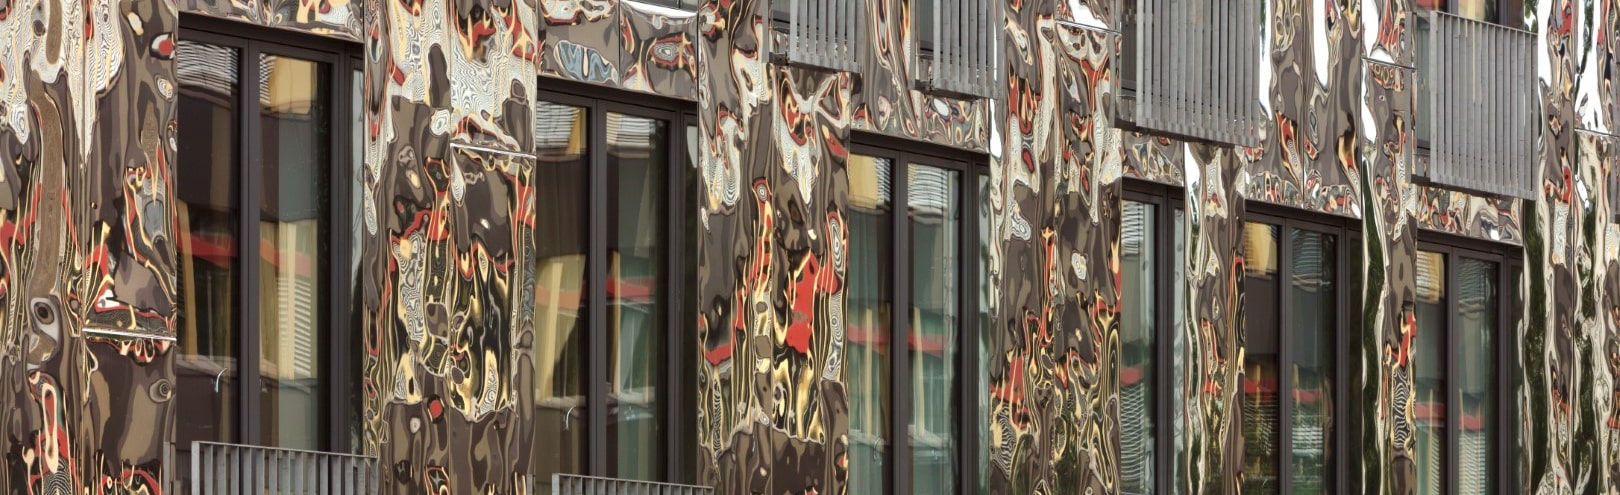 H6 in Berlin mit spiegelnder Fassade aus ROOFINOX CHROMA Fassadenschindeln